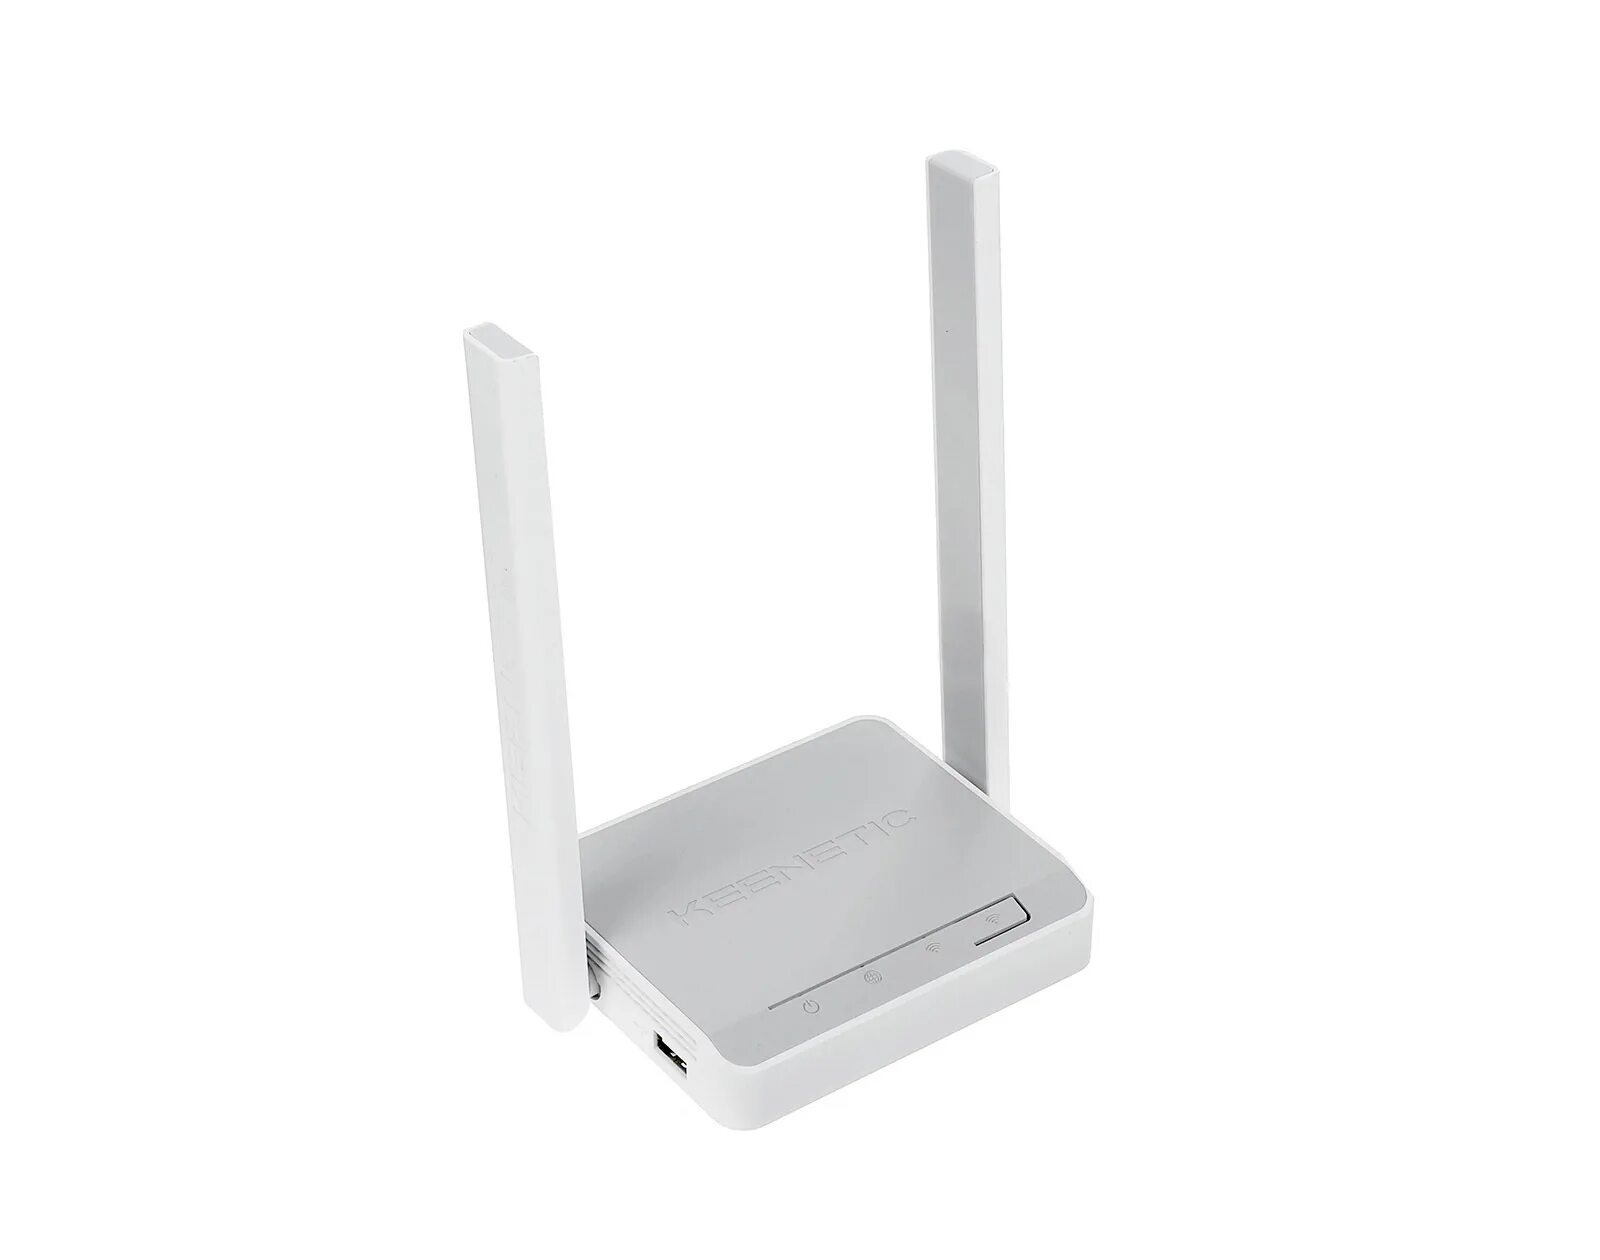 Wi-Fi роутер Keenetic 4g (KN-1211). Роутер Keenetic 4g KN-1210. Wi-Fi роутер Keenetic 4g n300. Wi-Fi роутер ZYXEL Keenetic 4g. Комплект 4g роутер